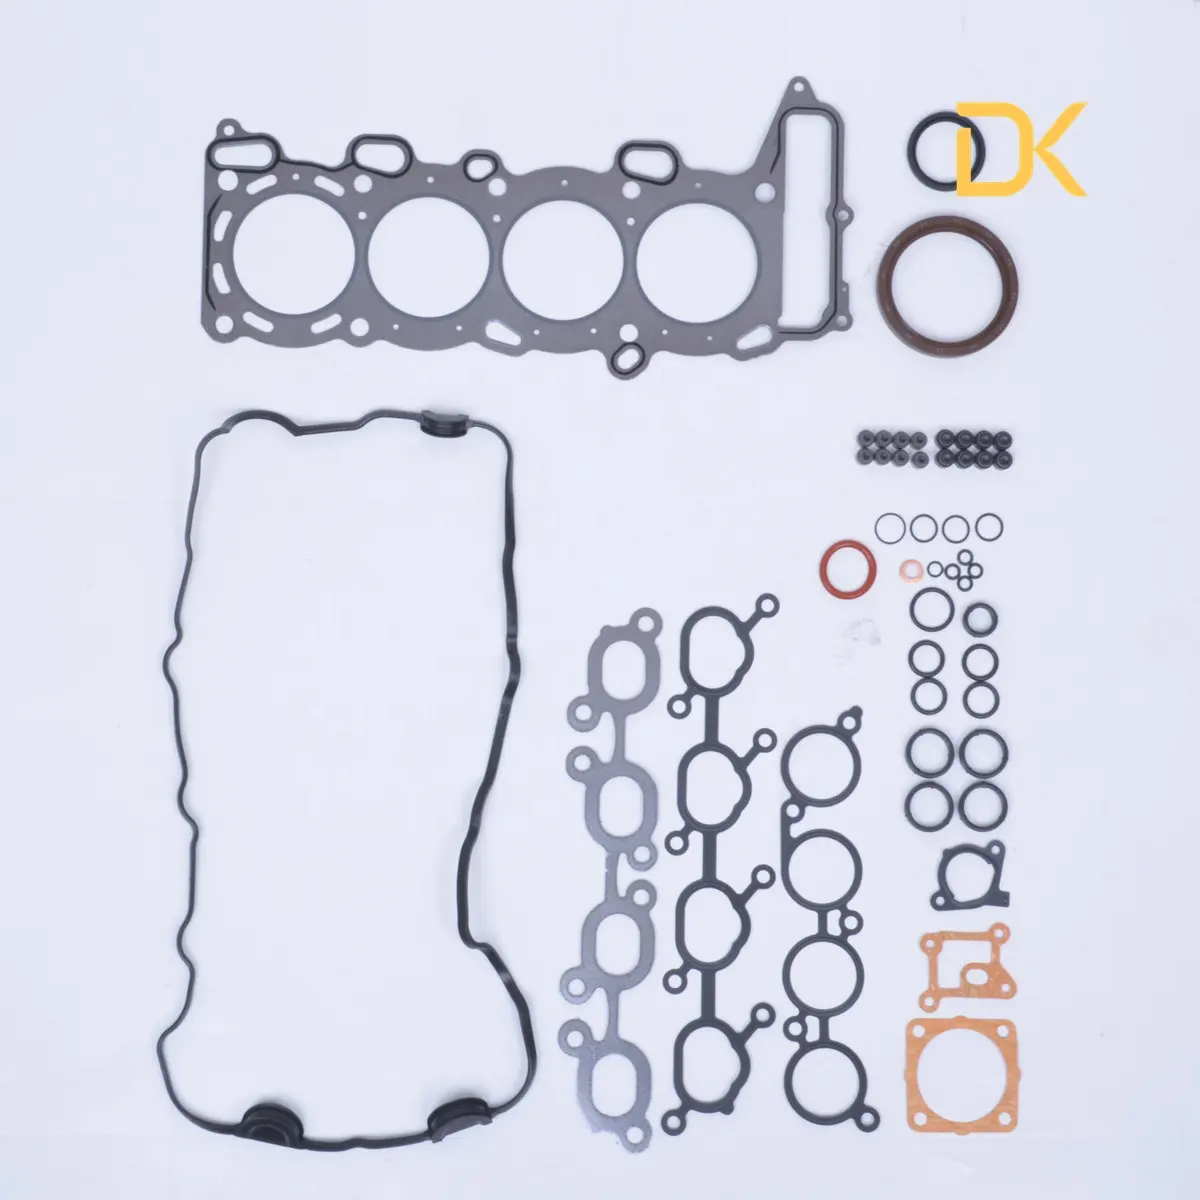 R20DE Kit Gasket Reparasi Mesin, Suku Cadang Mobil Set Gasket Penuh untuk Nissan TSURU 16V 1010101-om725 50110300 101-78E26